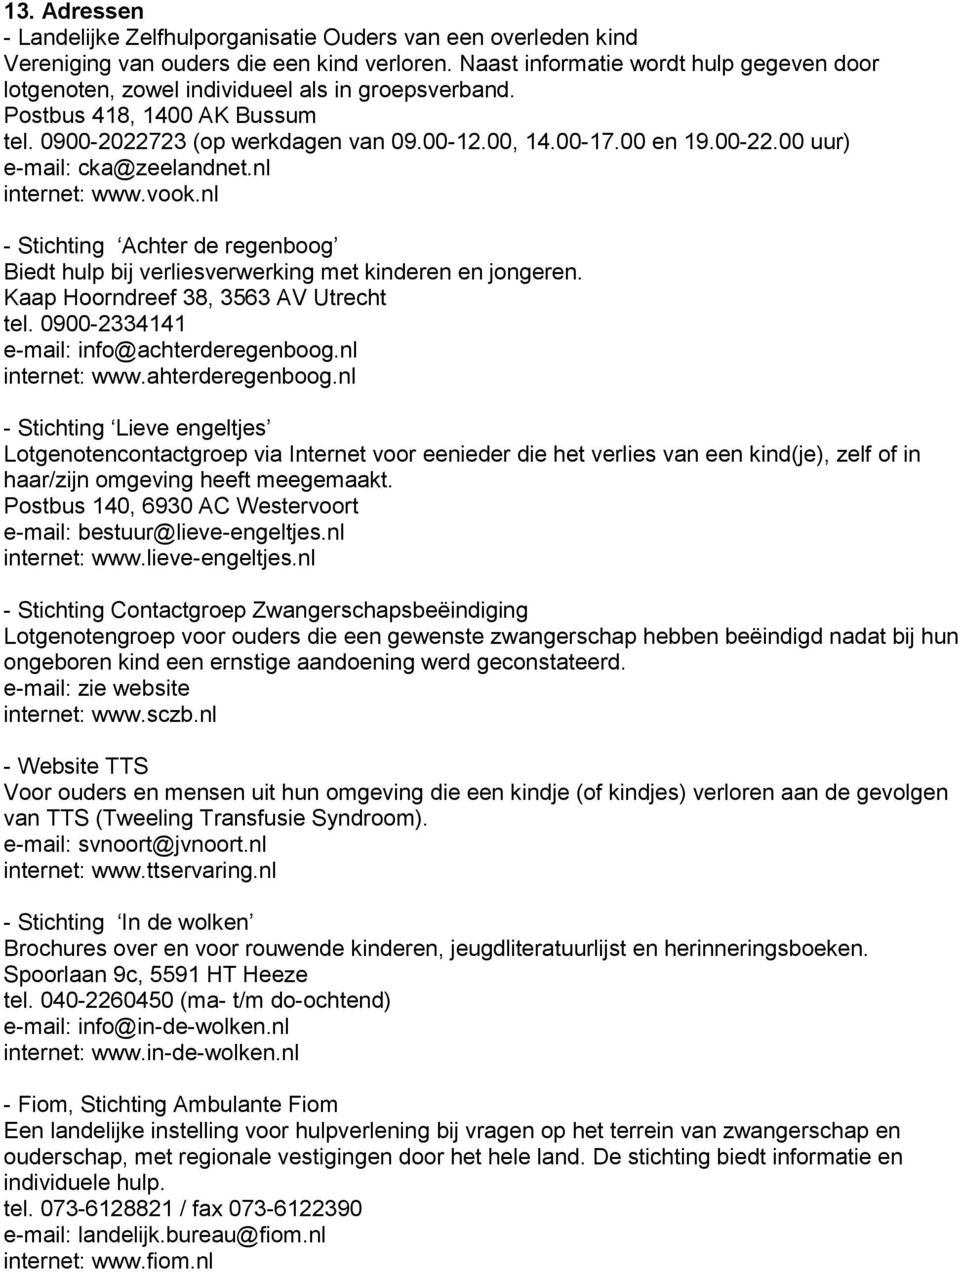 00 uur) e-mail: cka@zeelandnet.nl internet: www.vook.nl - Stichting Achter de regenboog Biedt hulp bij verliesverwerking met kinderen en jongeren. Kaap Hoorndreef 38, 3563 AV Utrecht tel.